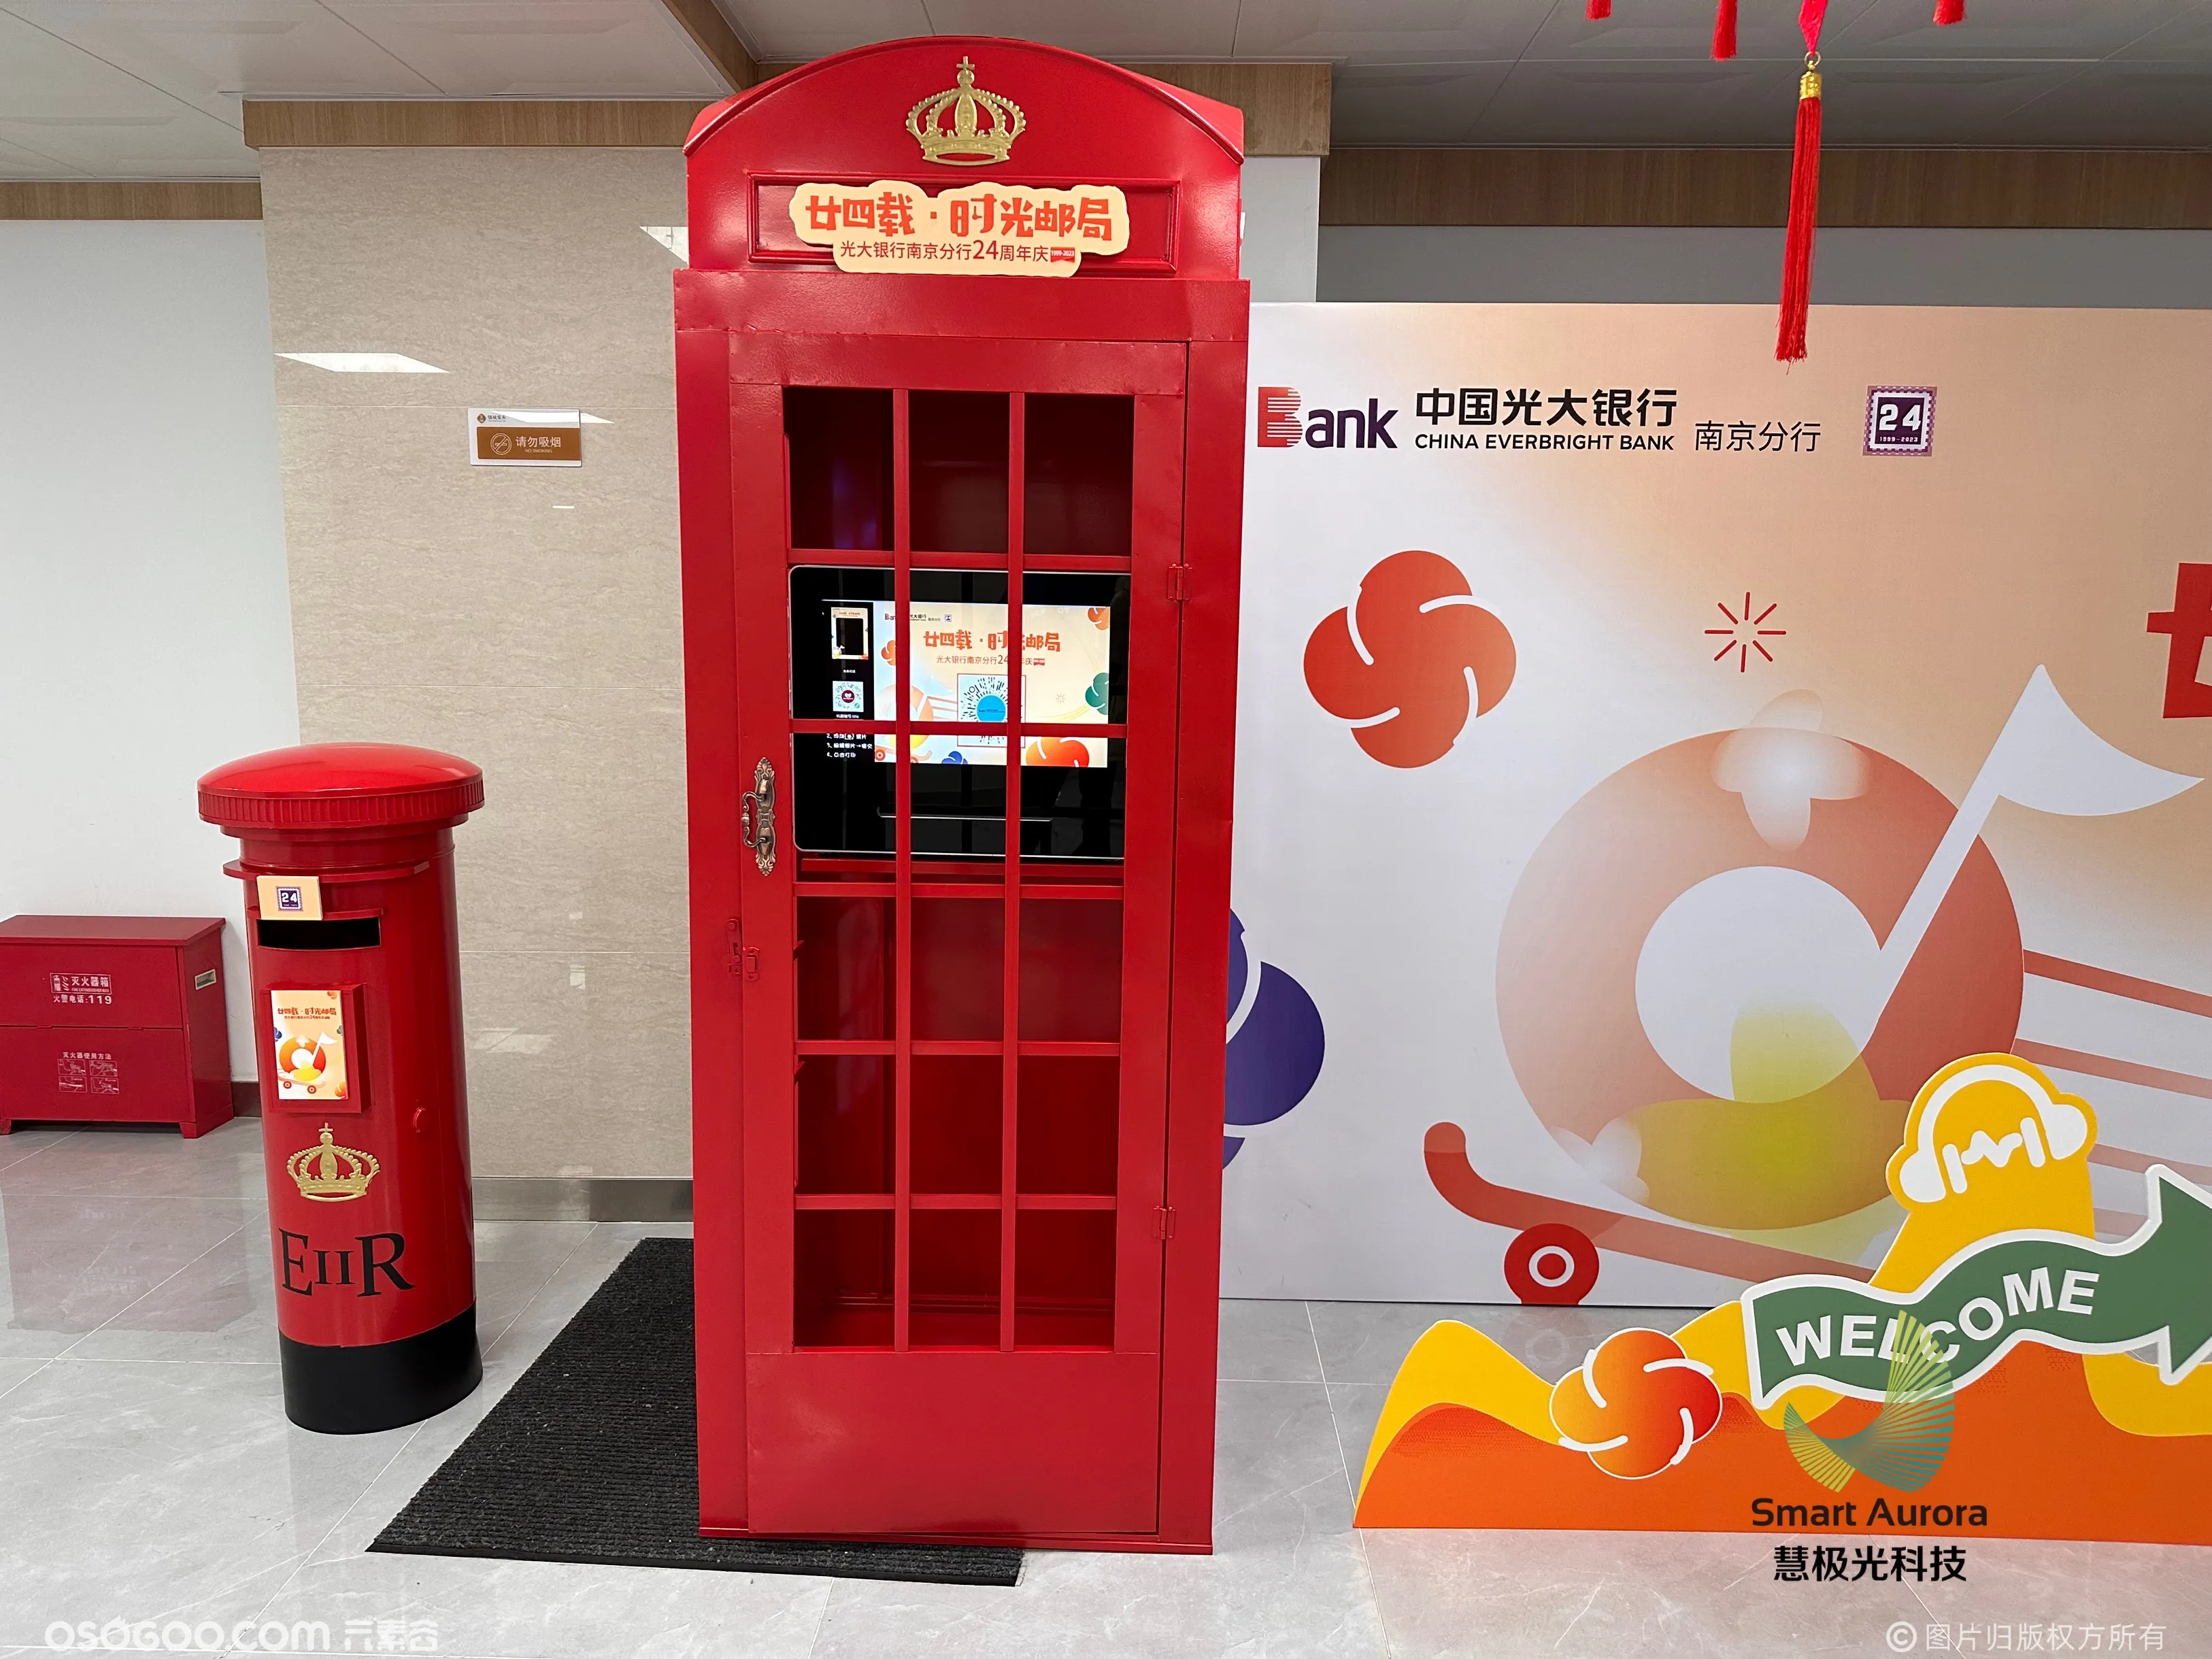 南京光大银行声音邮局装置周年纪念线下活动暖场道具